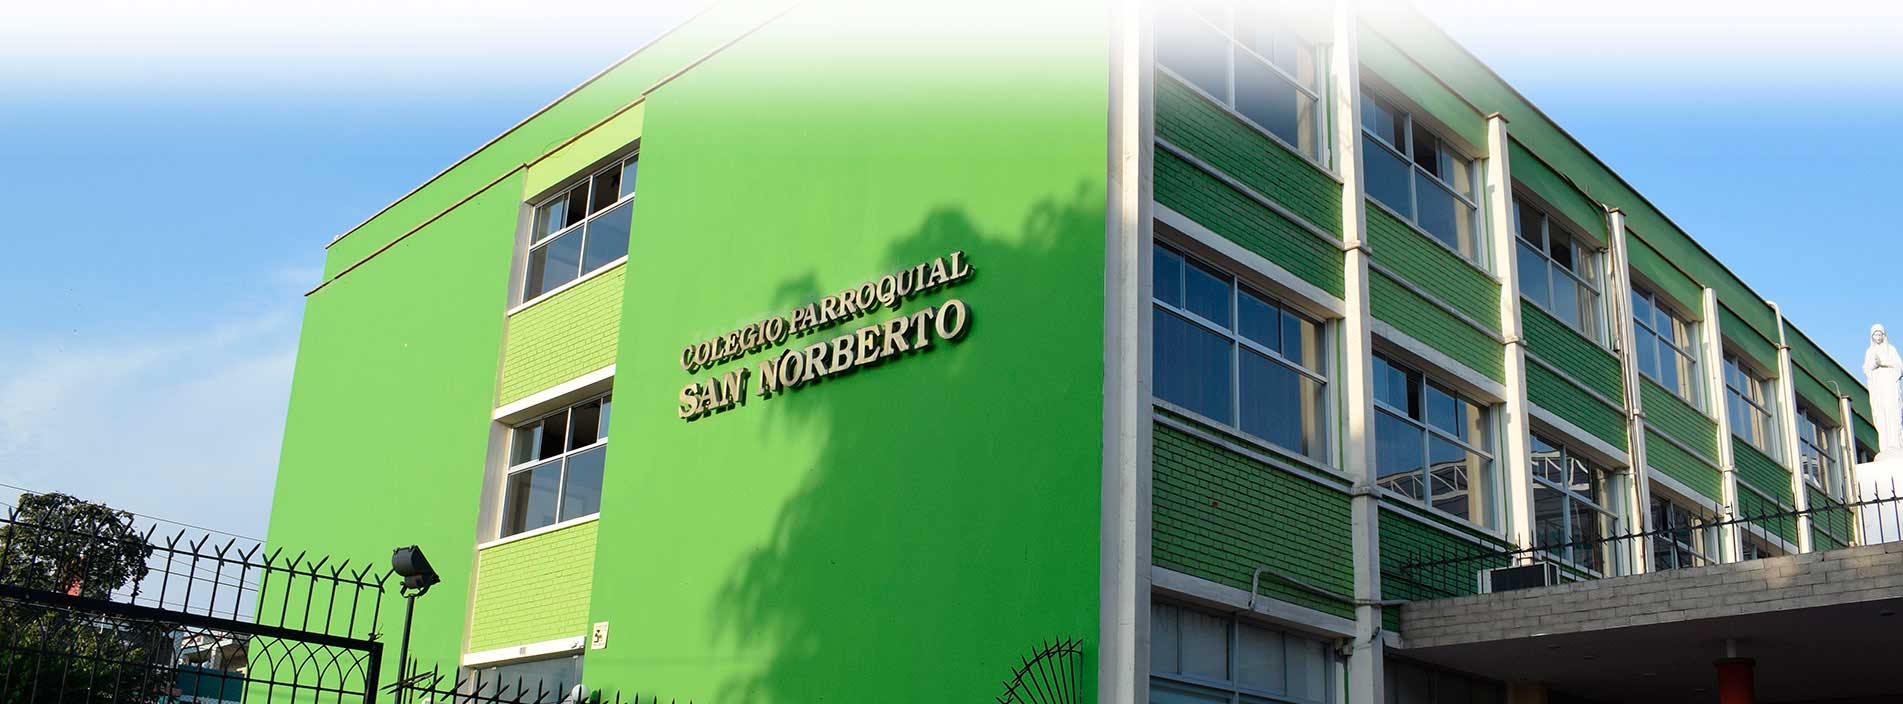 Fachada color verde del colegio San Norberto